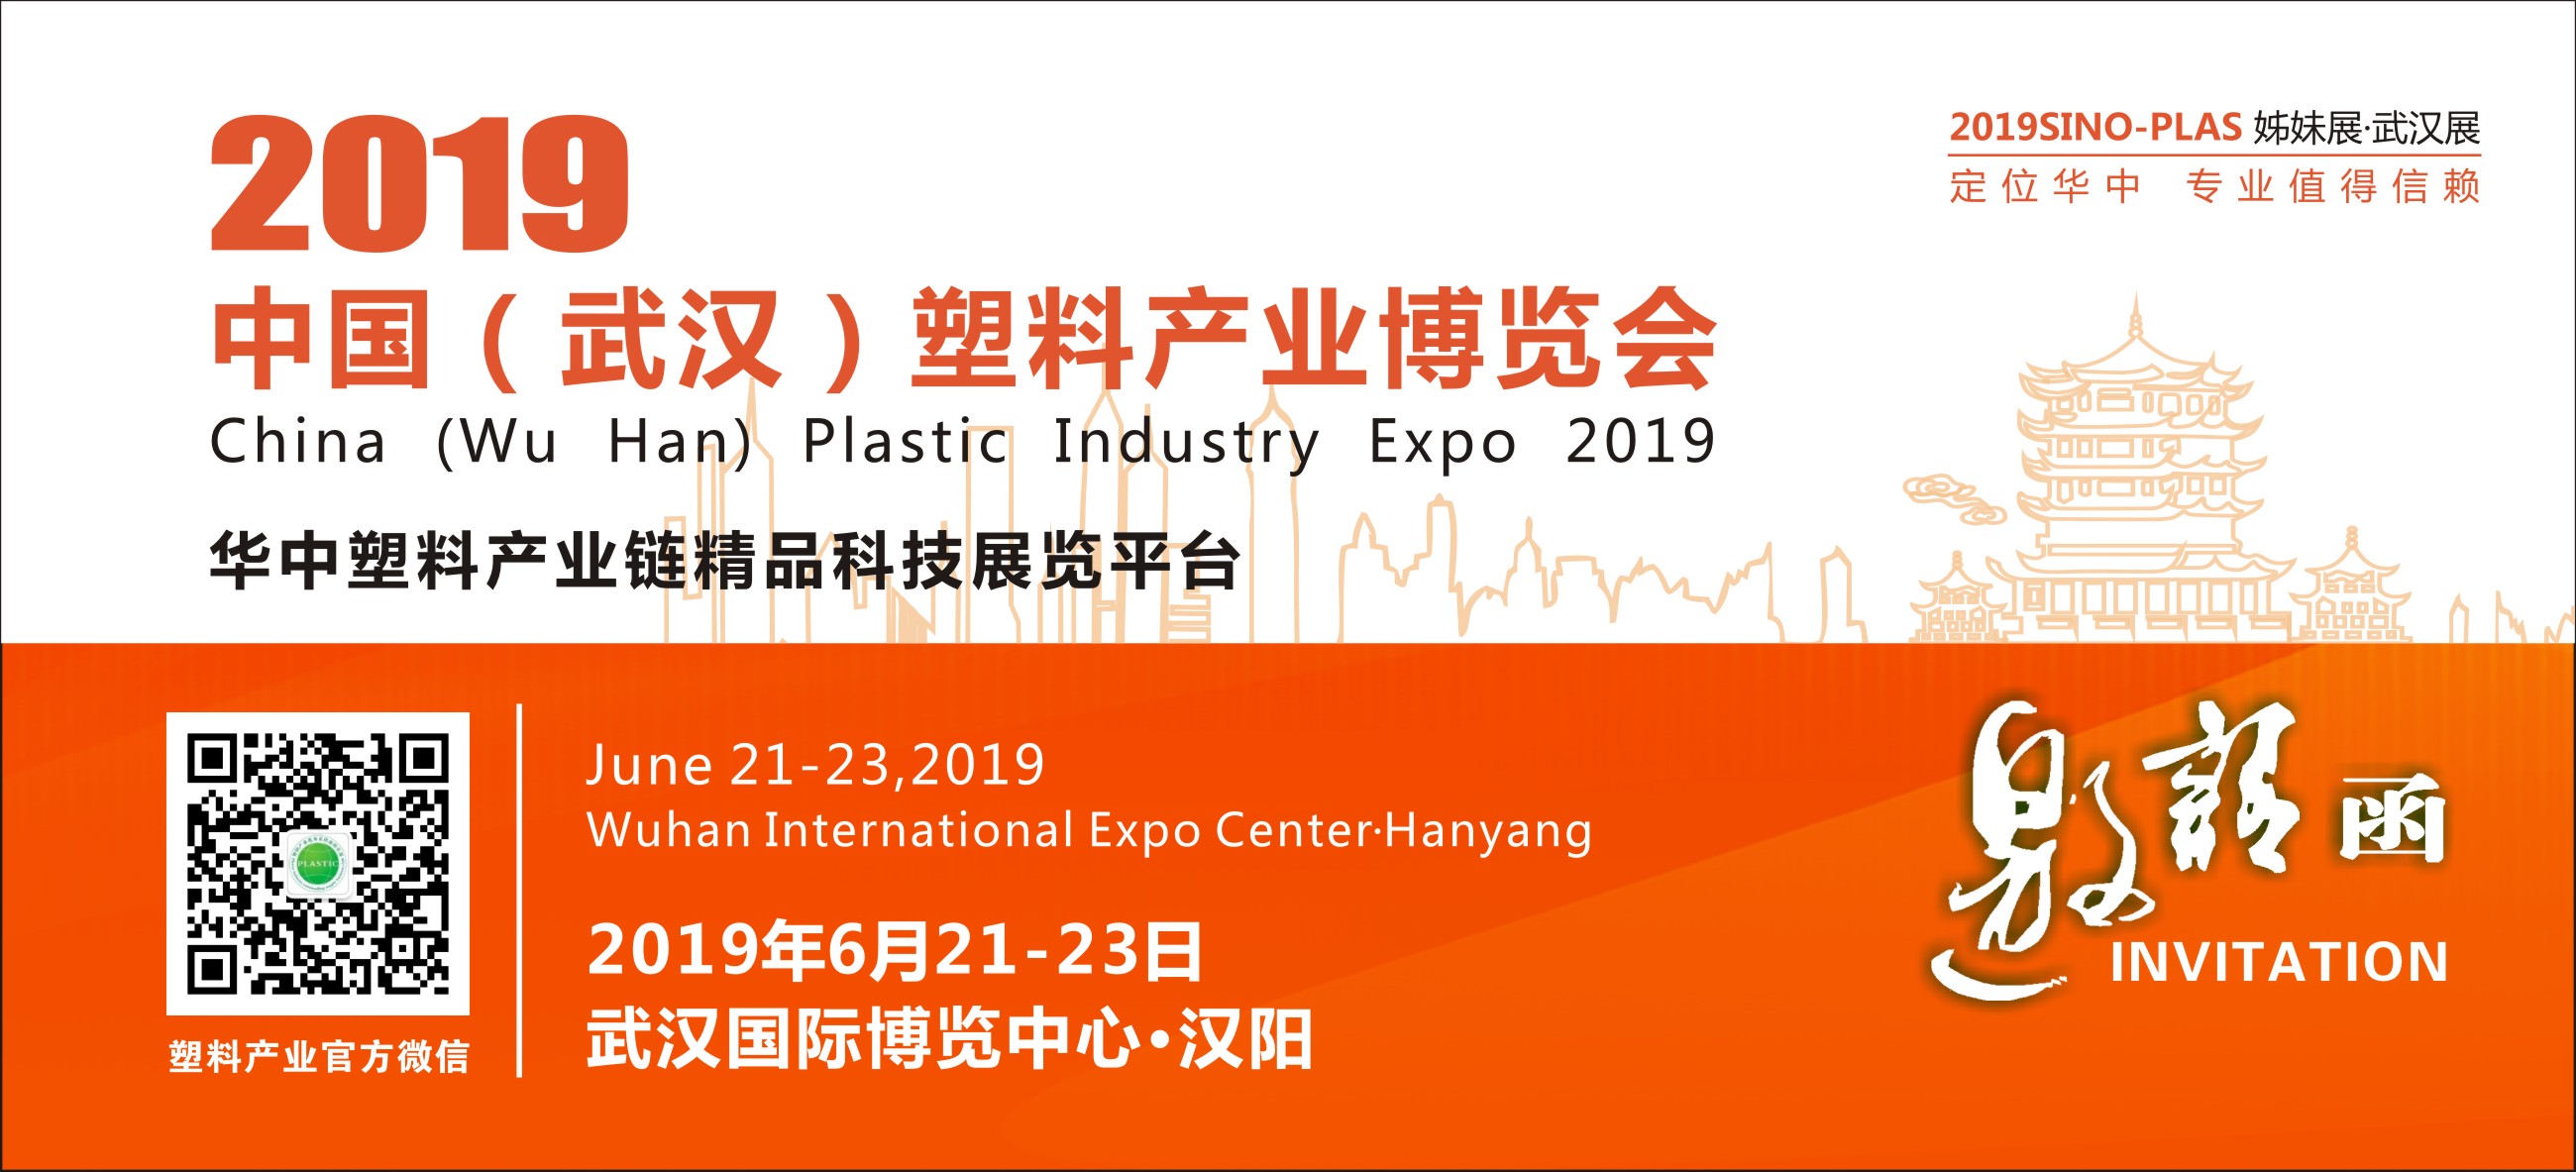 2019中国武汉塑料产业博览会